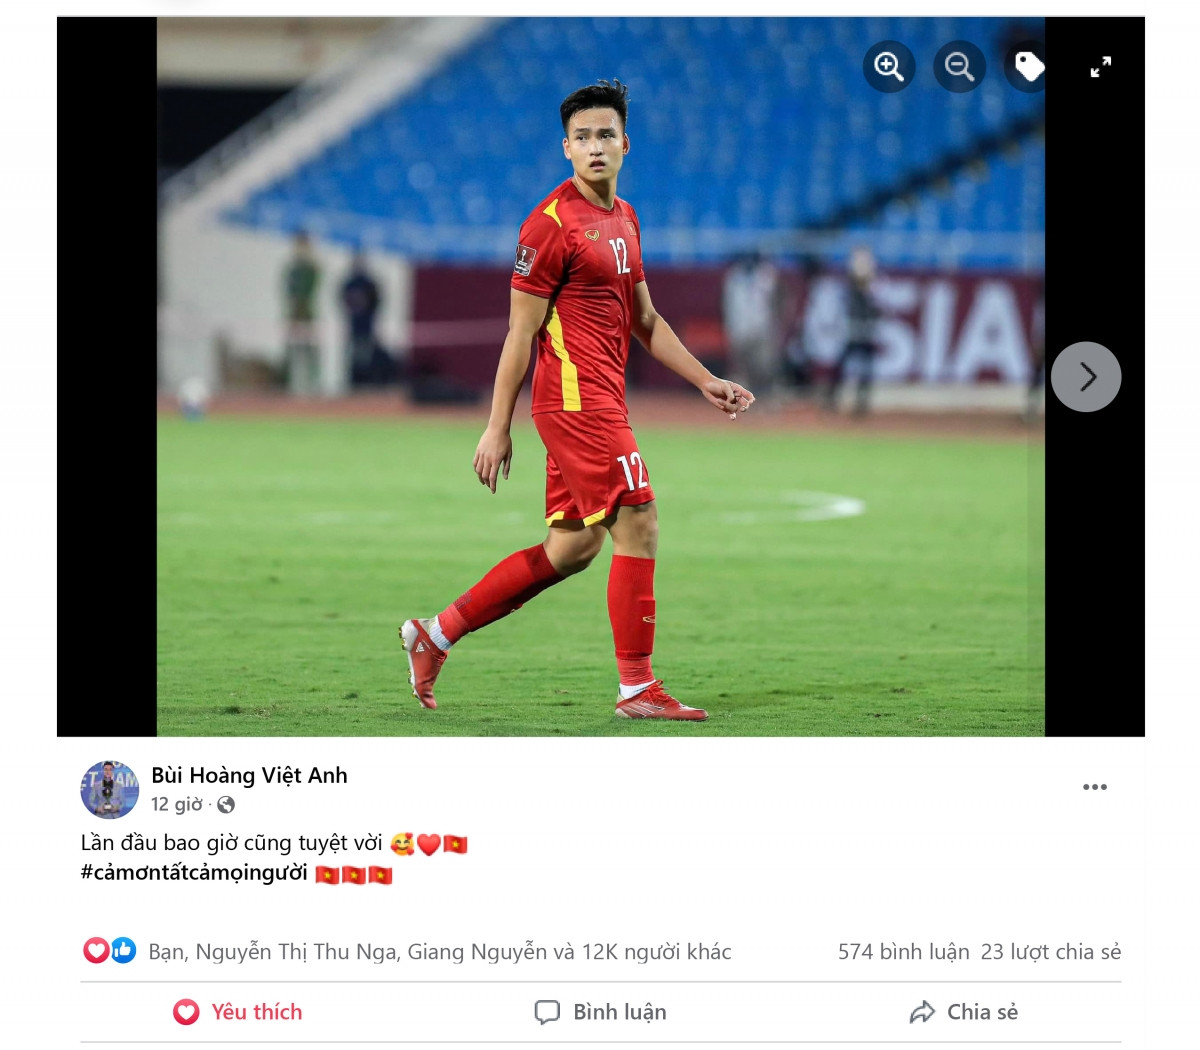 Bùi Hoàng Việt Anh được gọi bổ sung lên tuyển và được HLV Park Hang Seo sử dụng trong hiệp 2. Đây là lần đầu tiên trung vệ này được thi đấu ở ĐT Việt Nam và cầu thủ thuộc biên chế Hà Nội FC đã chơi rất tốt./.